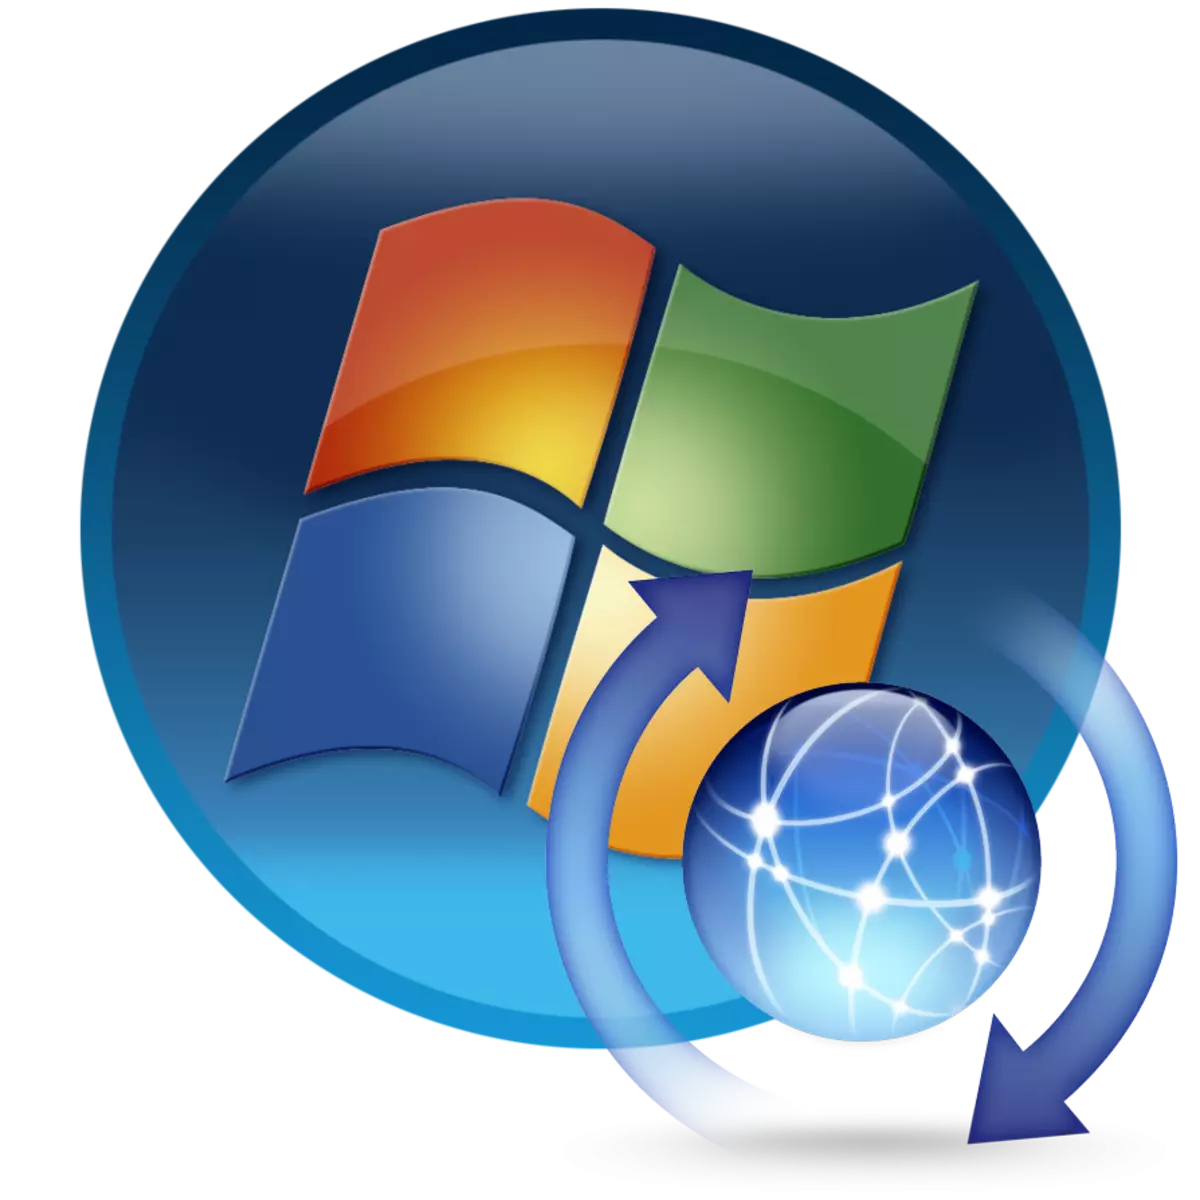 Cài đặt lại Windows 7 trên máy tính trên Windows 7